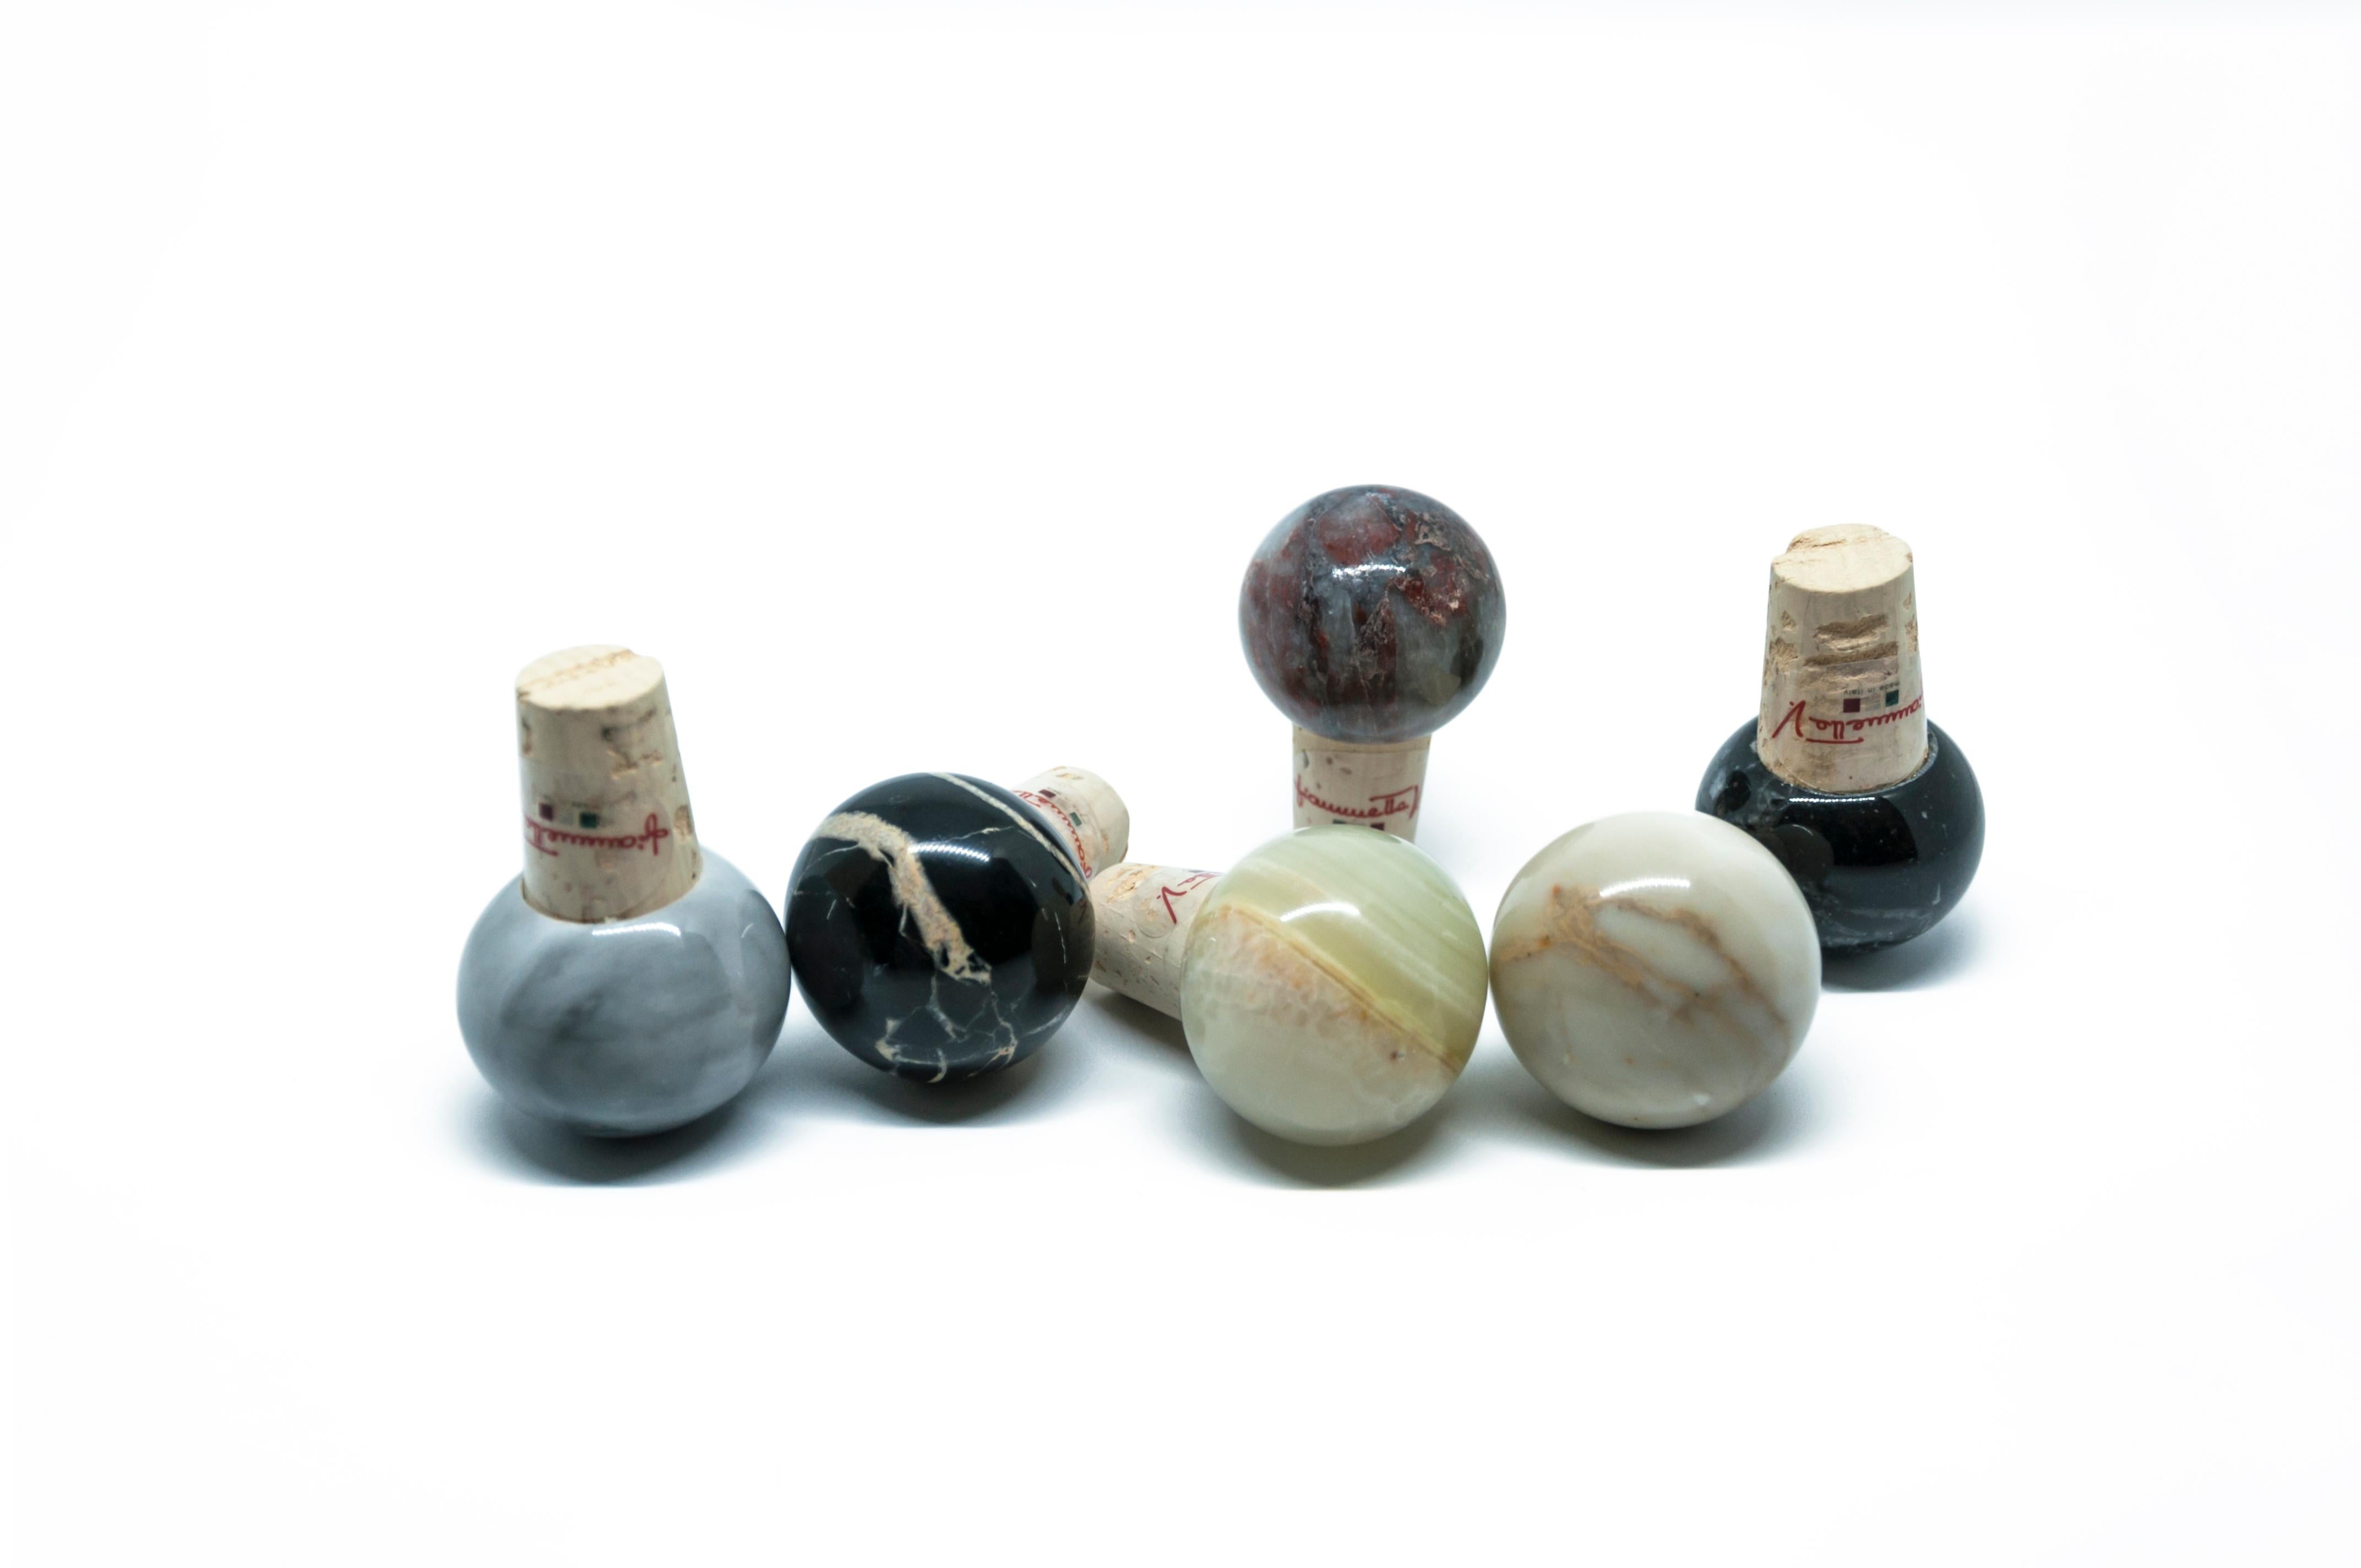 Satz von 6 Flaschenverschlüssen in gemischten Marmorfarben und Kork, ideal für Wein- und Olivenöl-Glasflaschen.

Jedes Stück ist in gewisser Weise einzigartig (da jeder Marmorblock unterschiedliche Maserungen und Schattierungen aufweist) und wird in